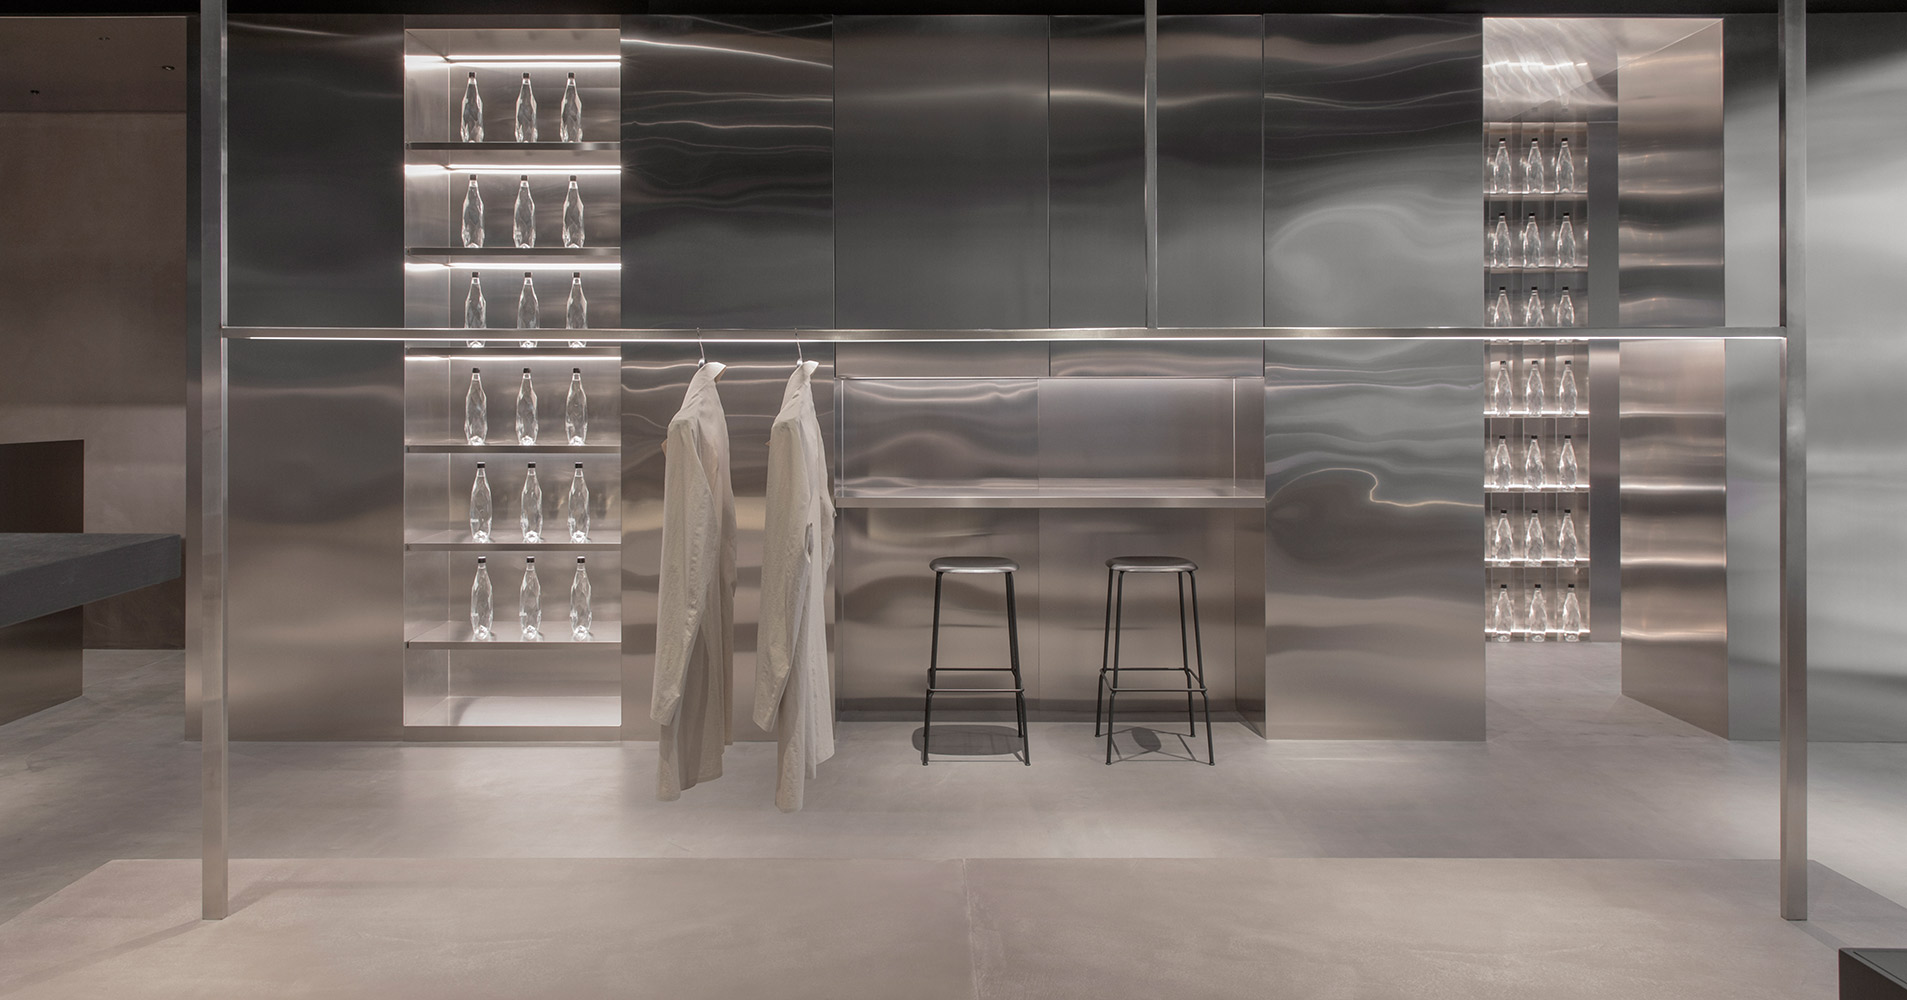 Francesc Rife Studio designs Nino Alvarez store in Spain